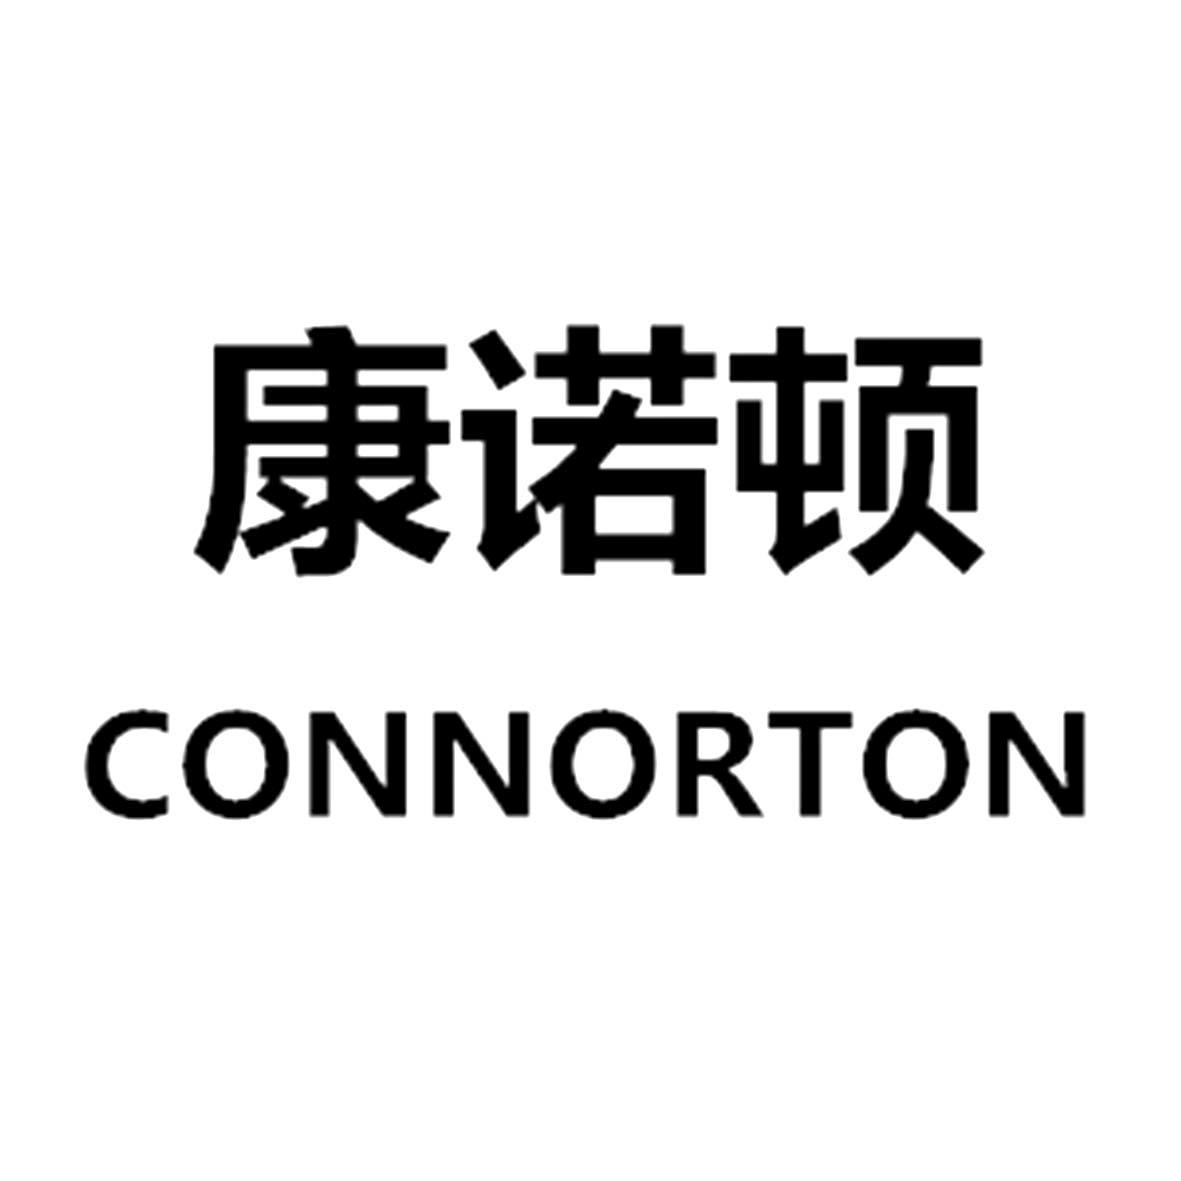 转让商标-康诺顿 CONNORTON